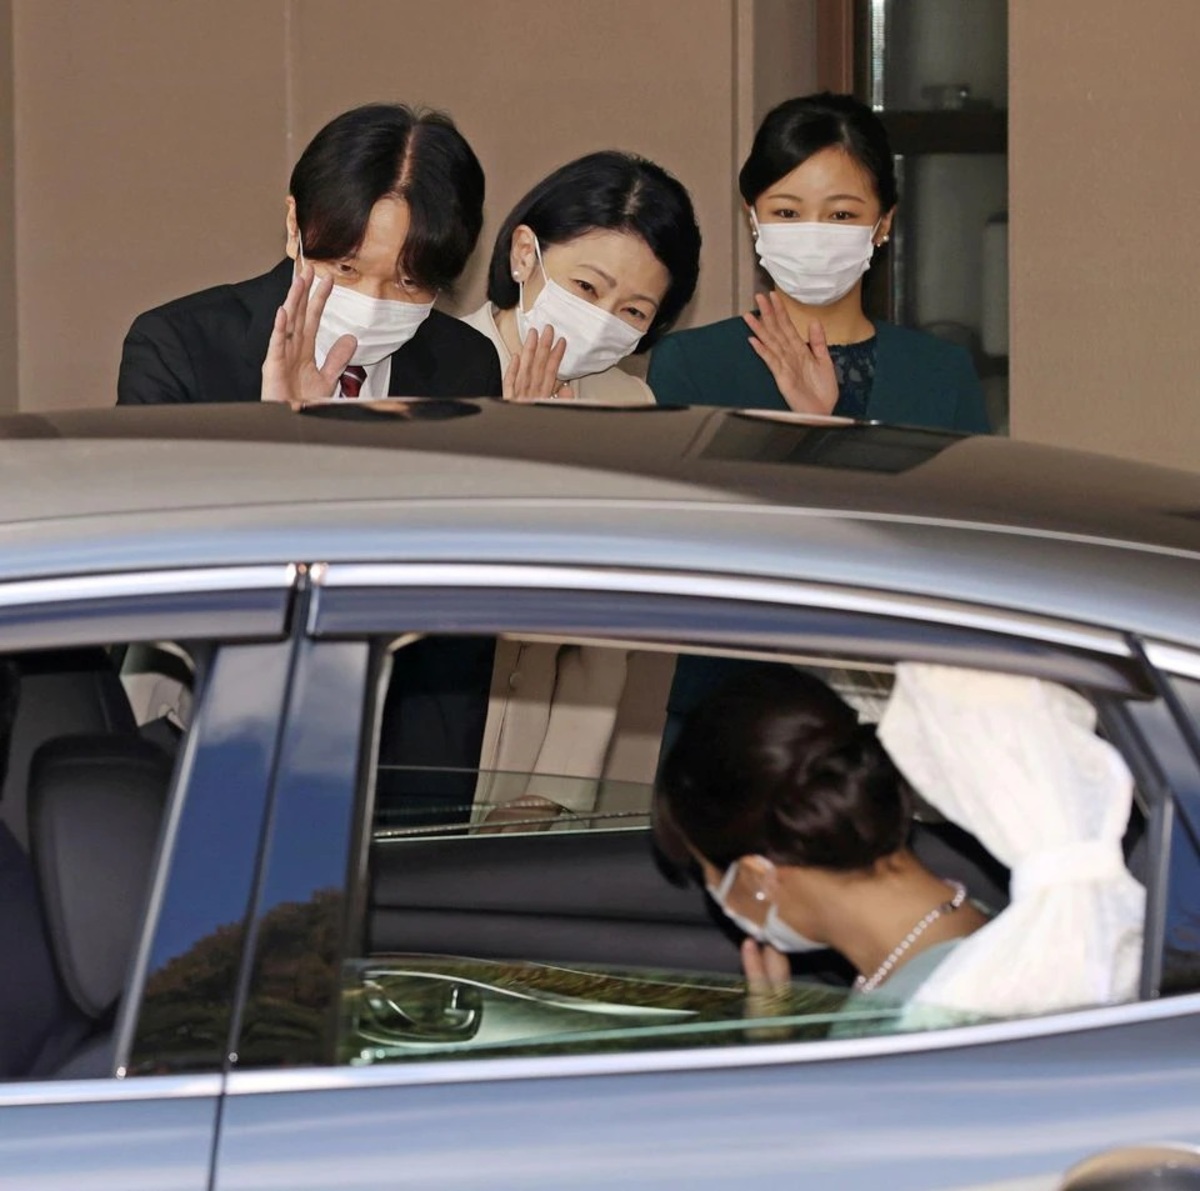 عروسی شاهزاده ژاپن با همکلاسی معمولی (عکس)/ بدون مراسم، بدون هدیه